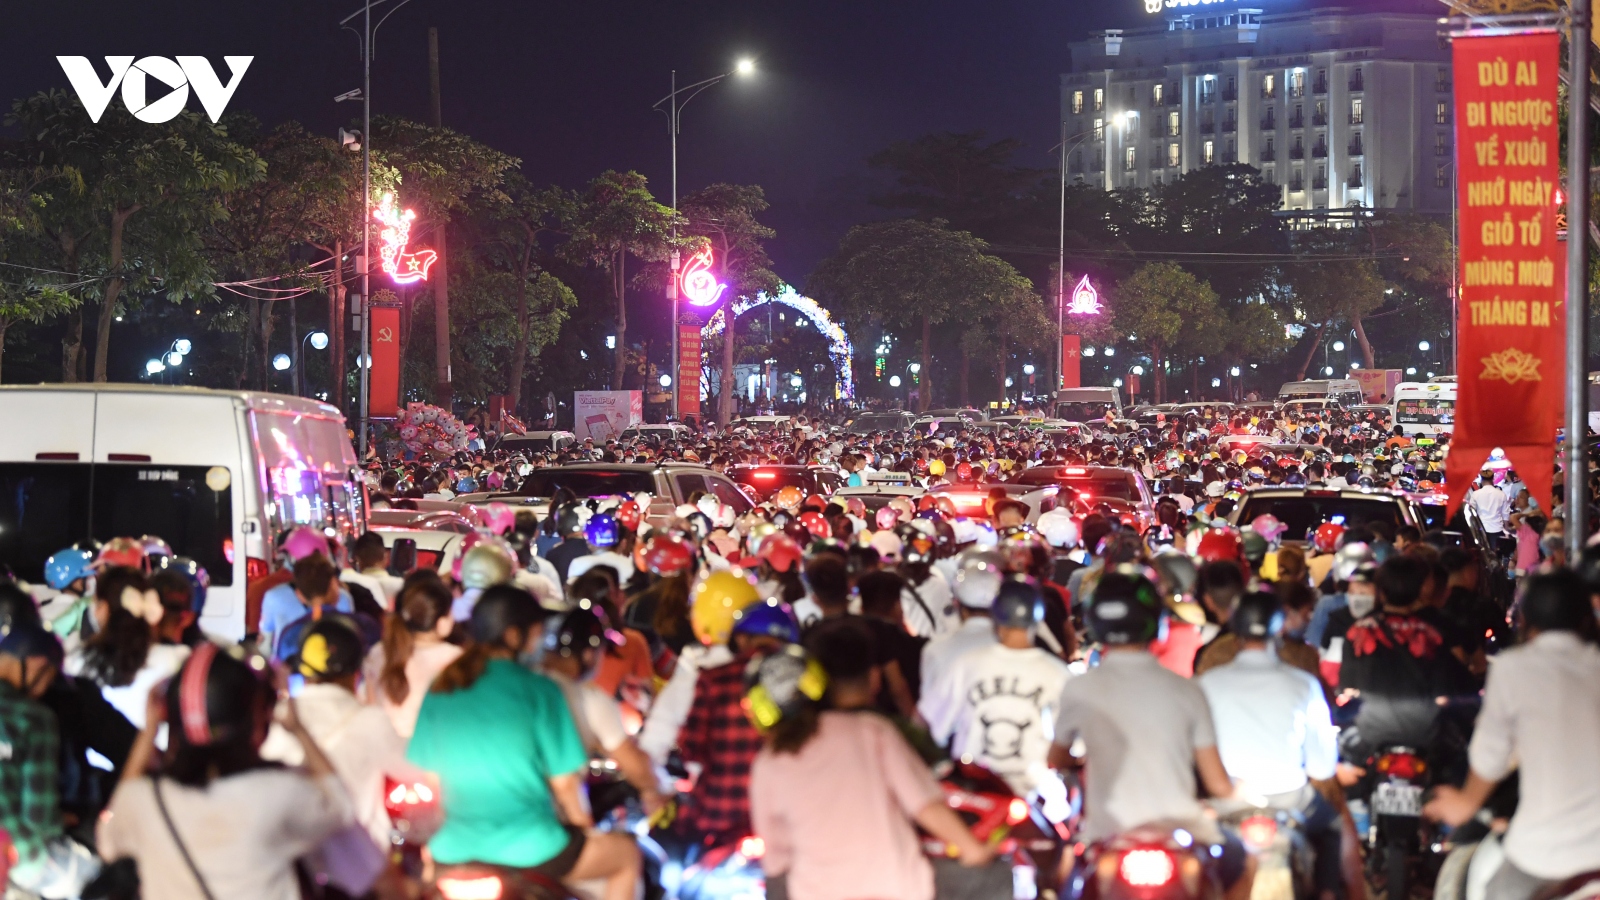 “Biển người” xem pháo hoa, đường phố Việt Trì tắc nghẽn